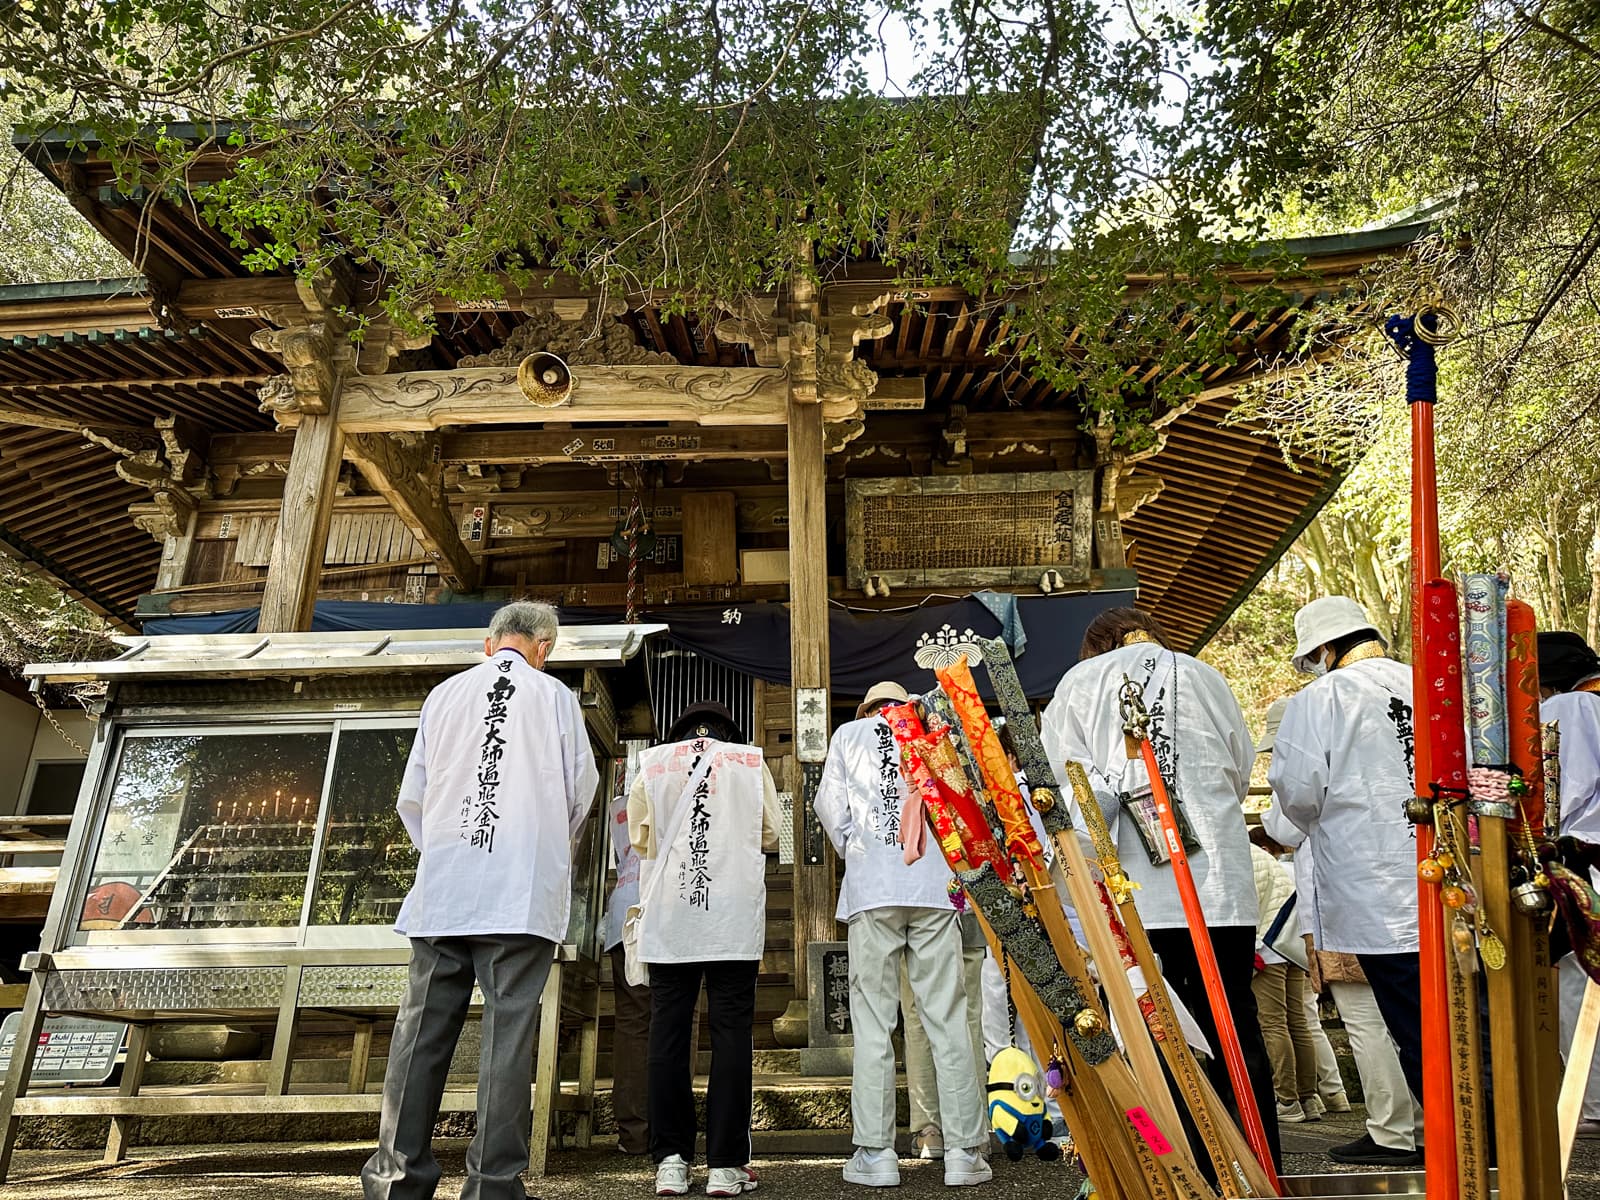 ohenro wearing pilgrim gear, praying at Gokurakuji, temple 2 of the Shikoku Pilgrimage.